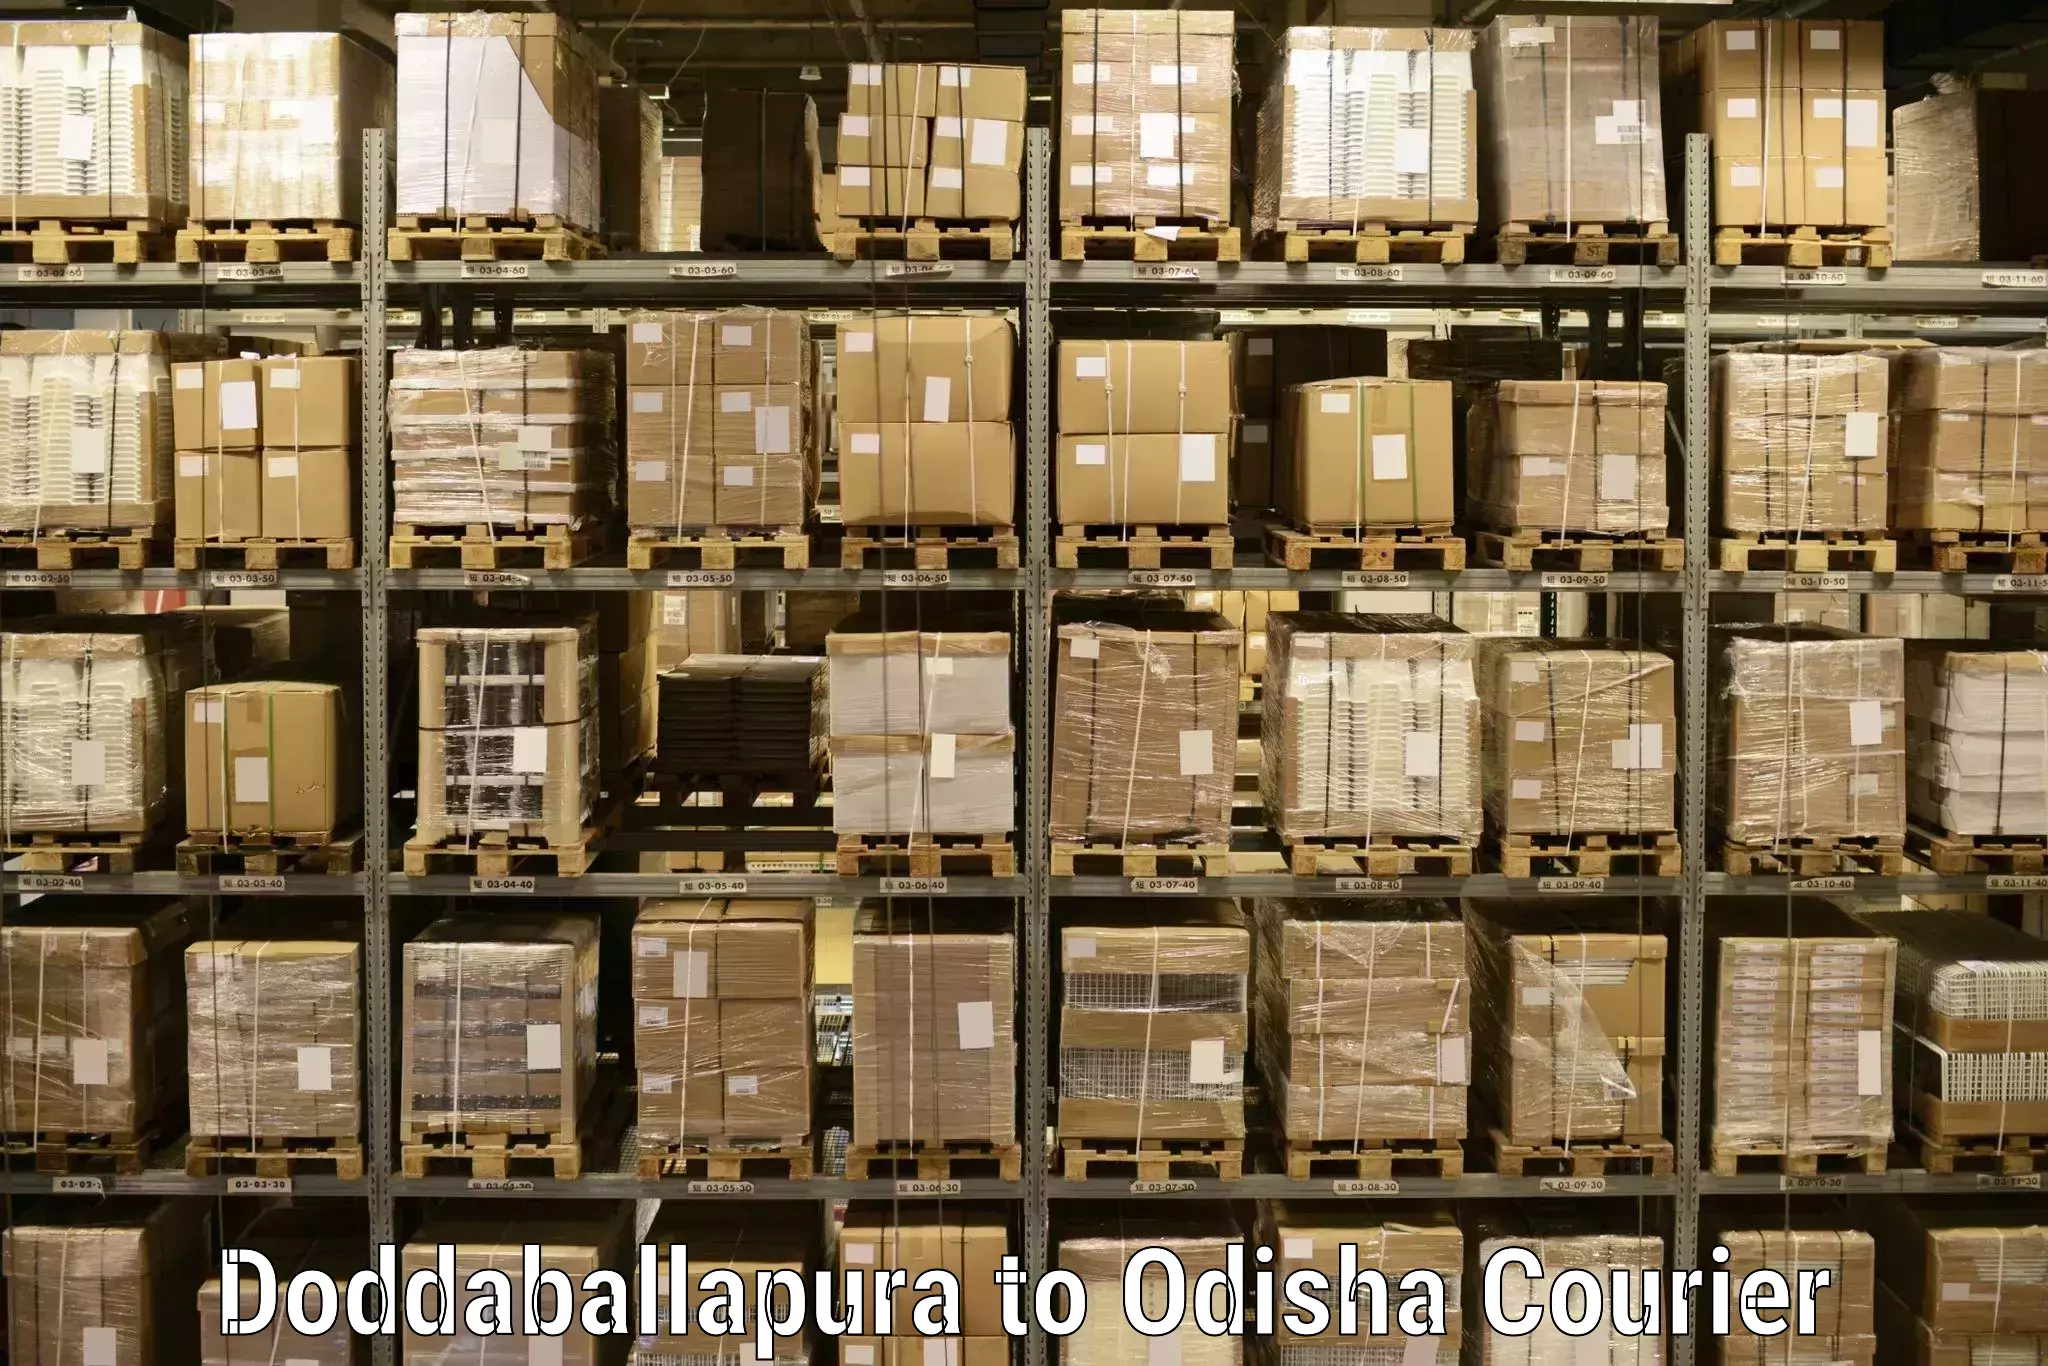 Sustainable shipping practices Doddaballapura to Barkote